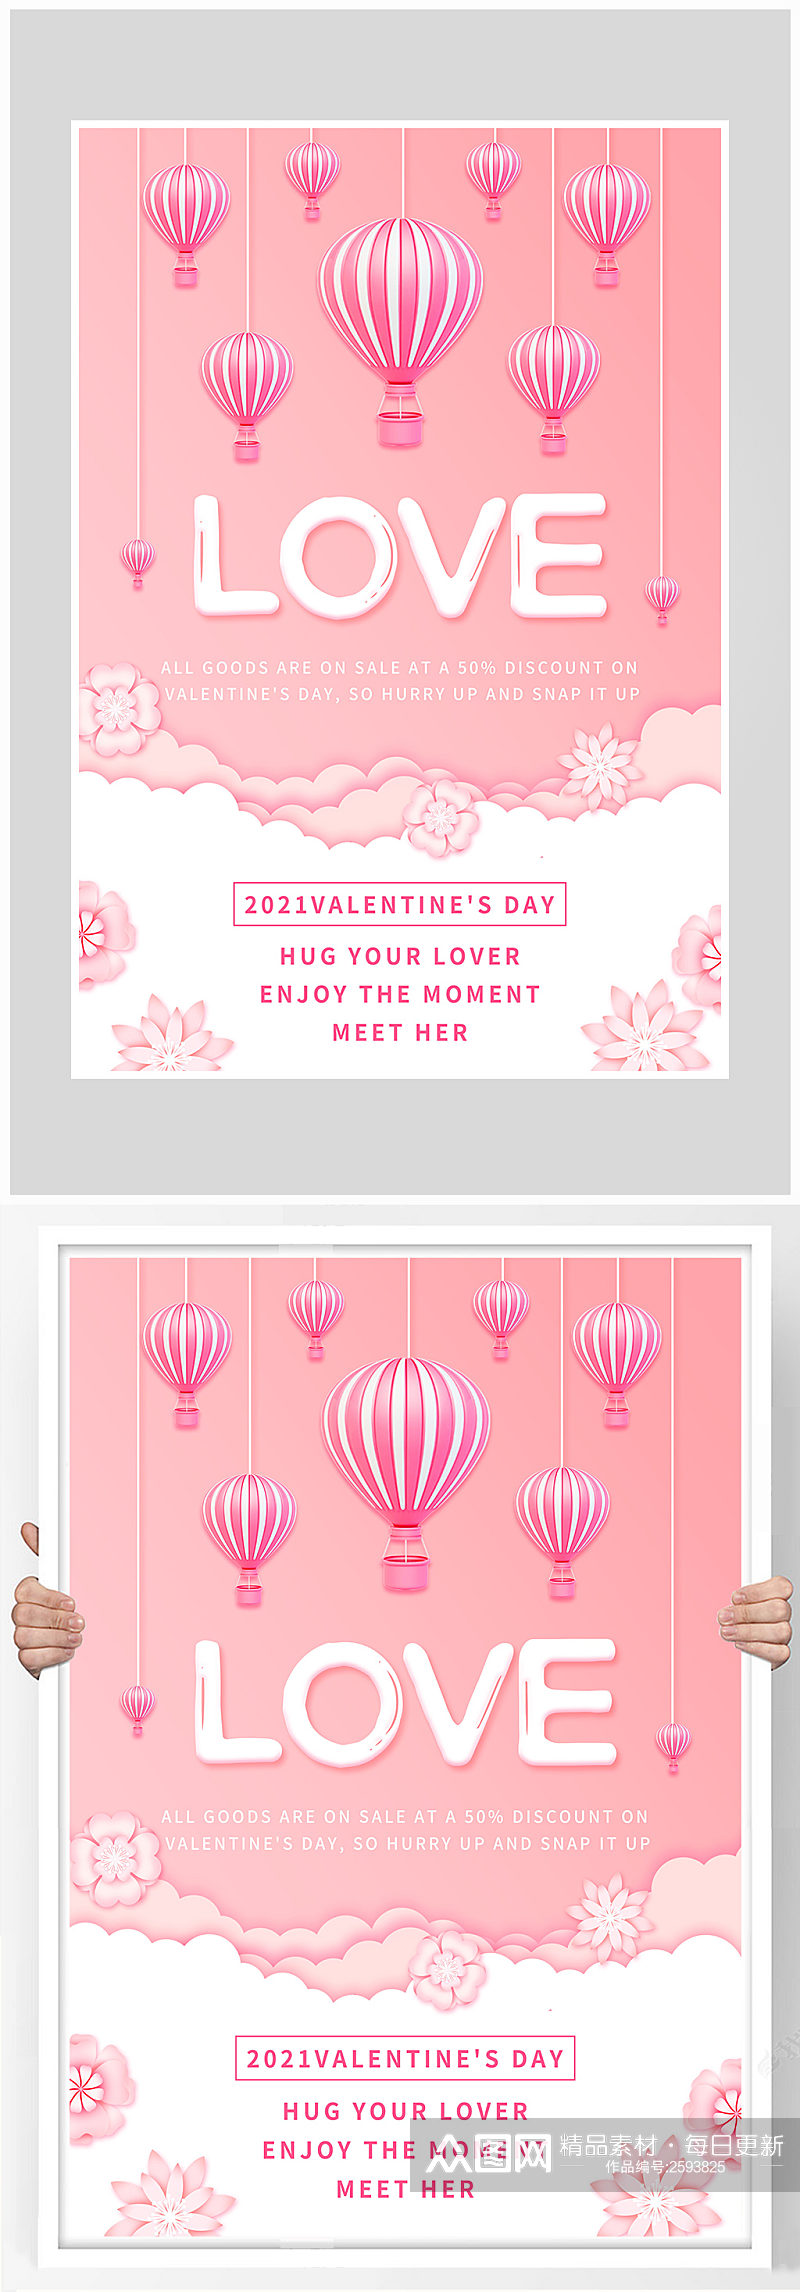 唯美粉色浪漫情人节爱情海报设计素材